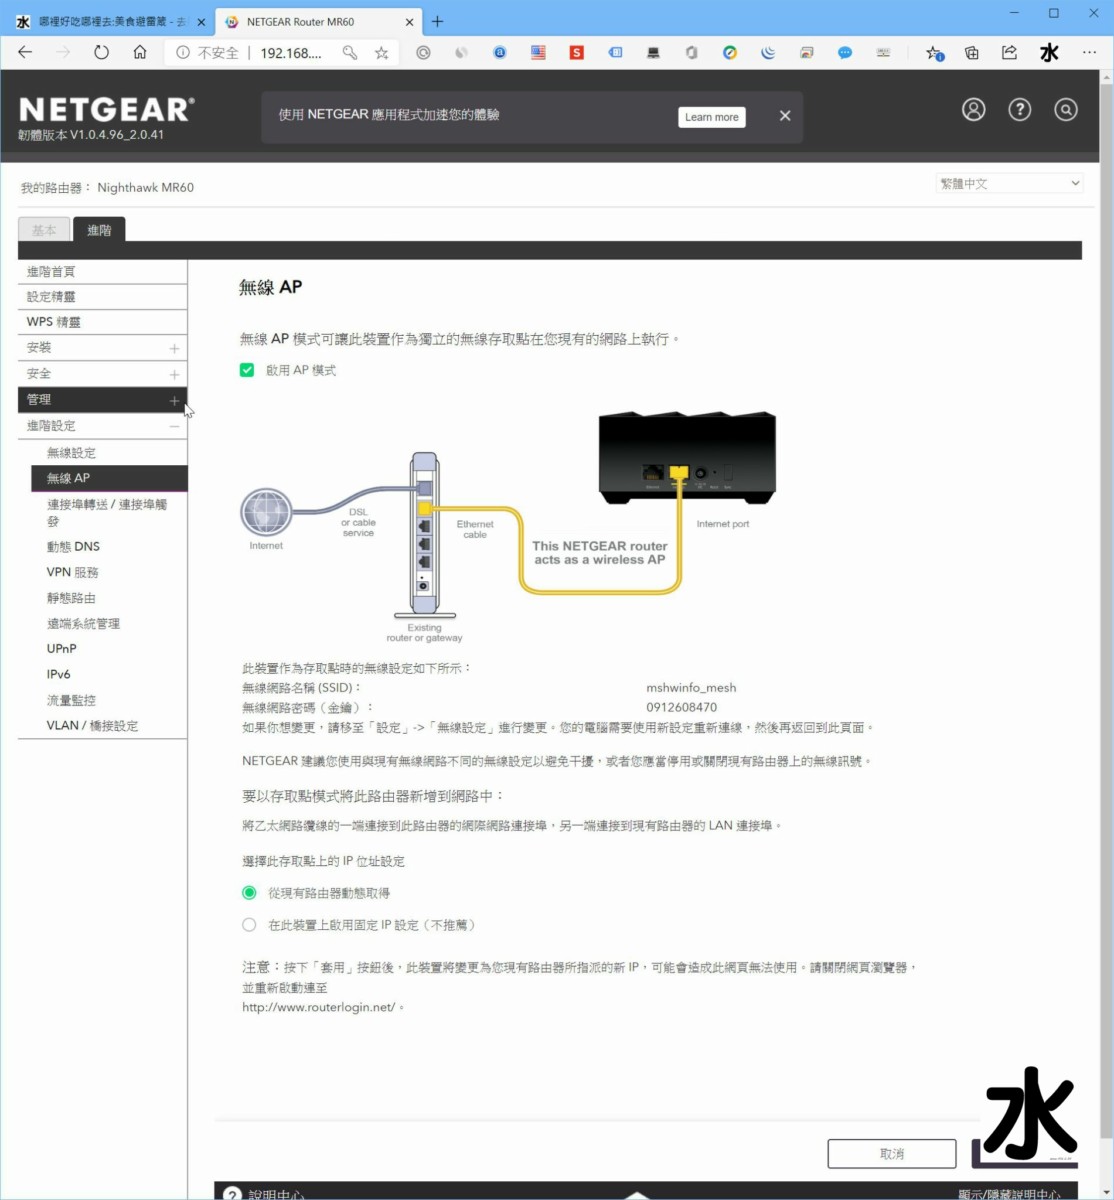 【數位3C】NETGEAR Nightwhak AX1800 MK63 WiFi 6 Mesh網狀網路基地台 : 覆蓋全面超給力,訊號較弱也不掉封包 3C/資訊/通訊/網路 新聞與政治 硬體 網路 網通設備 試吃試用業配文  